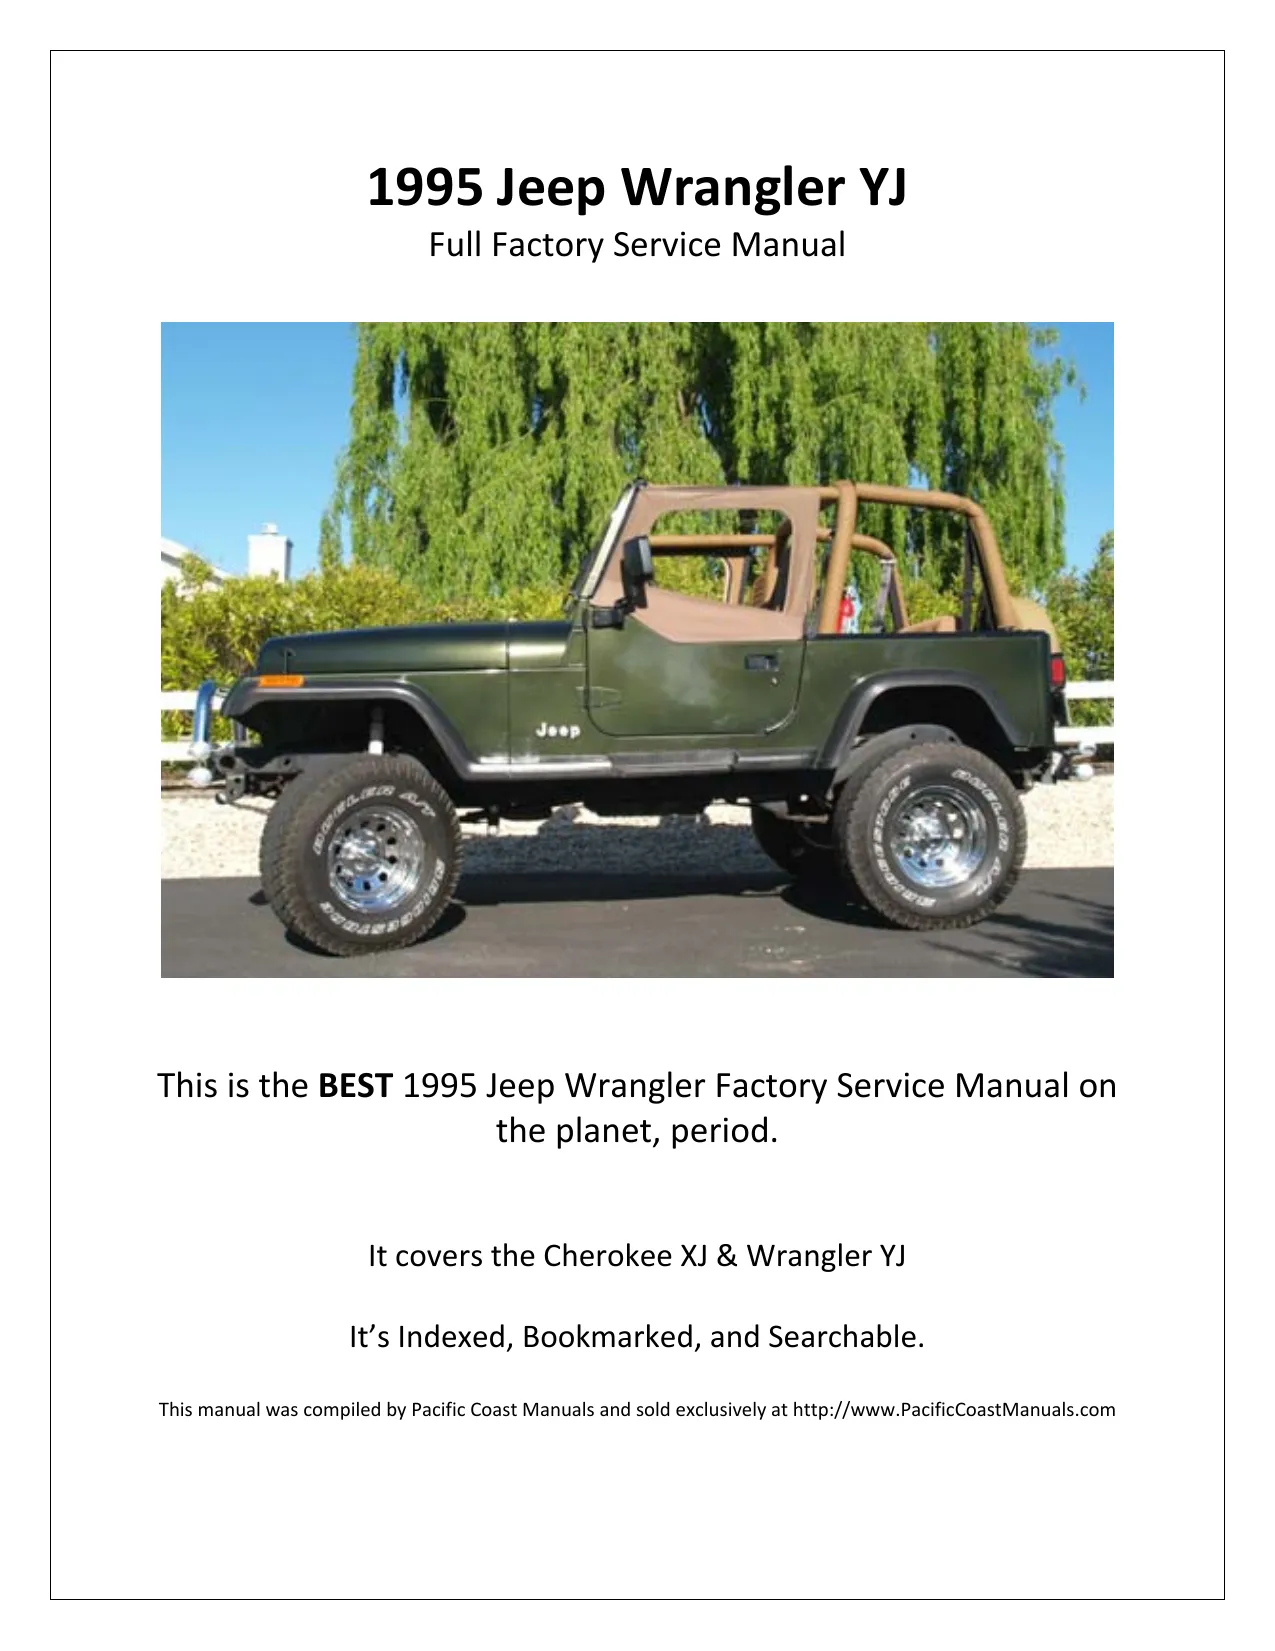 1995 Jeep Wrangler YJ repair manual